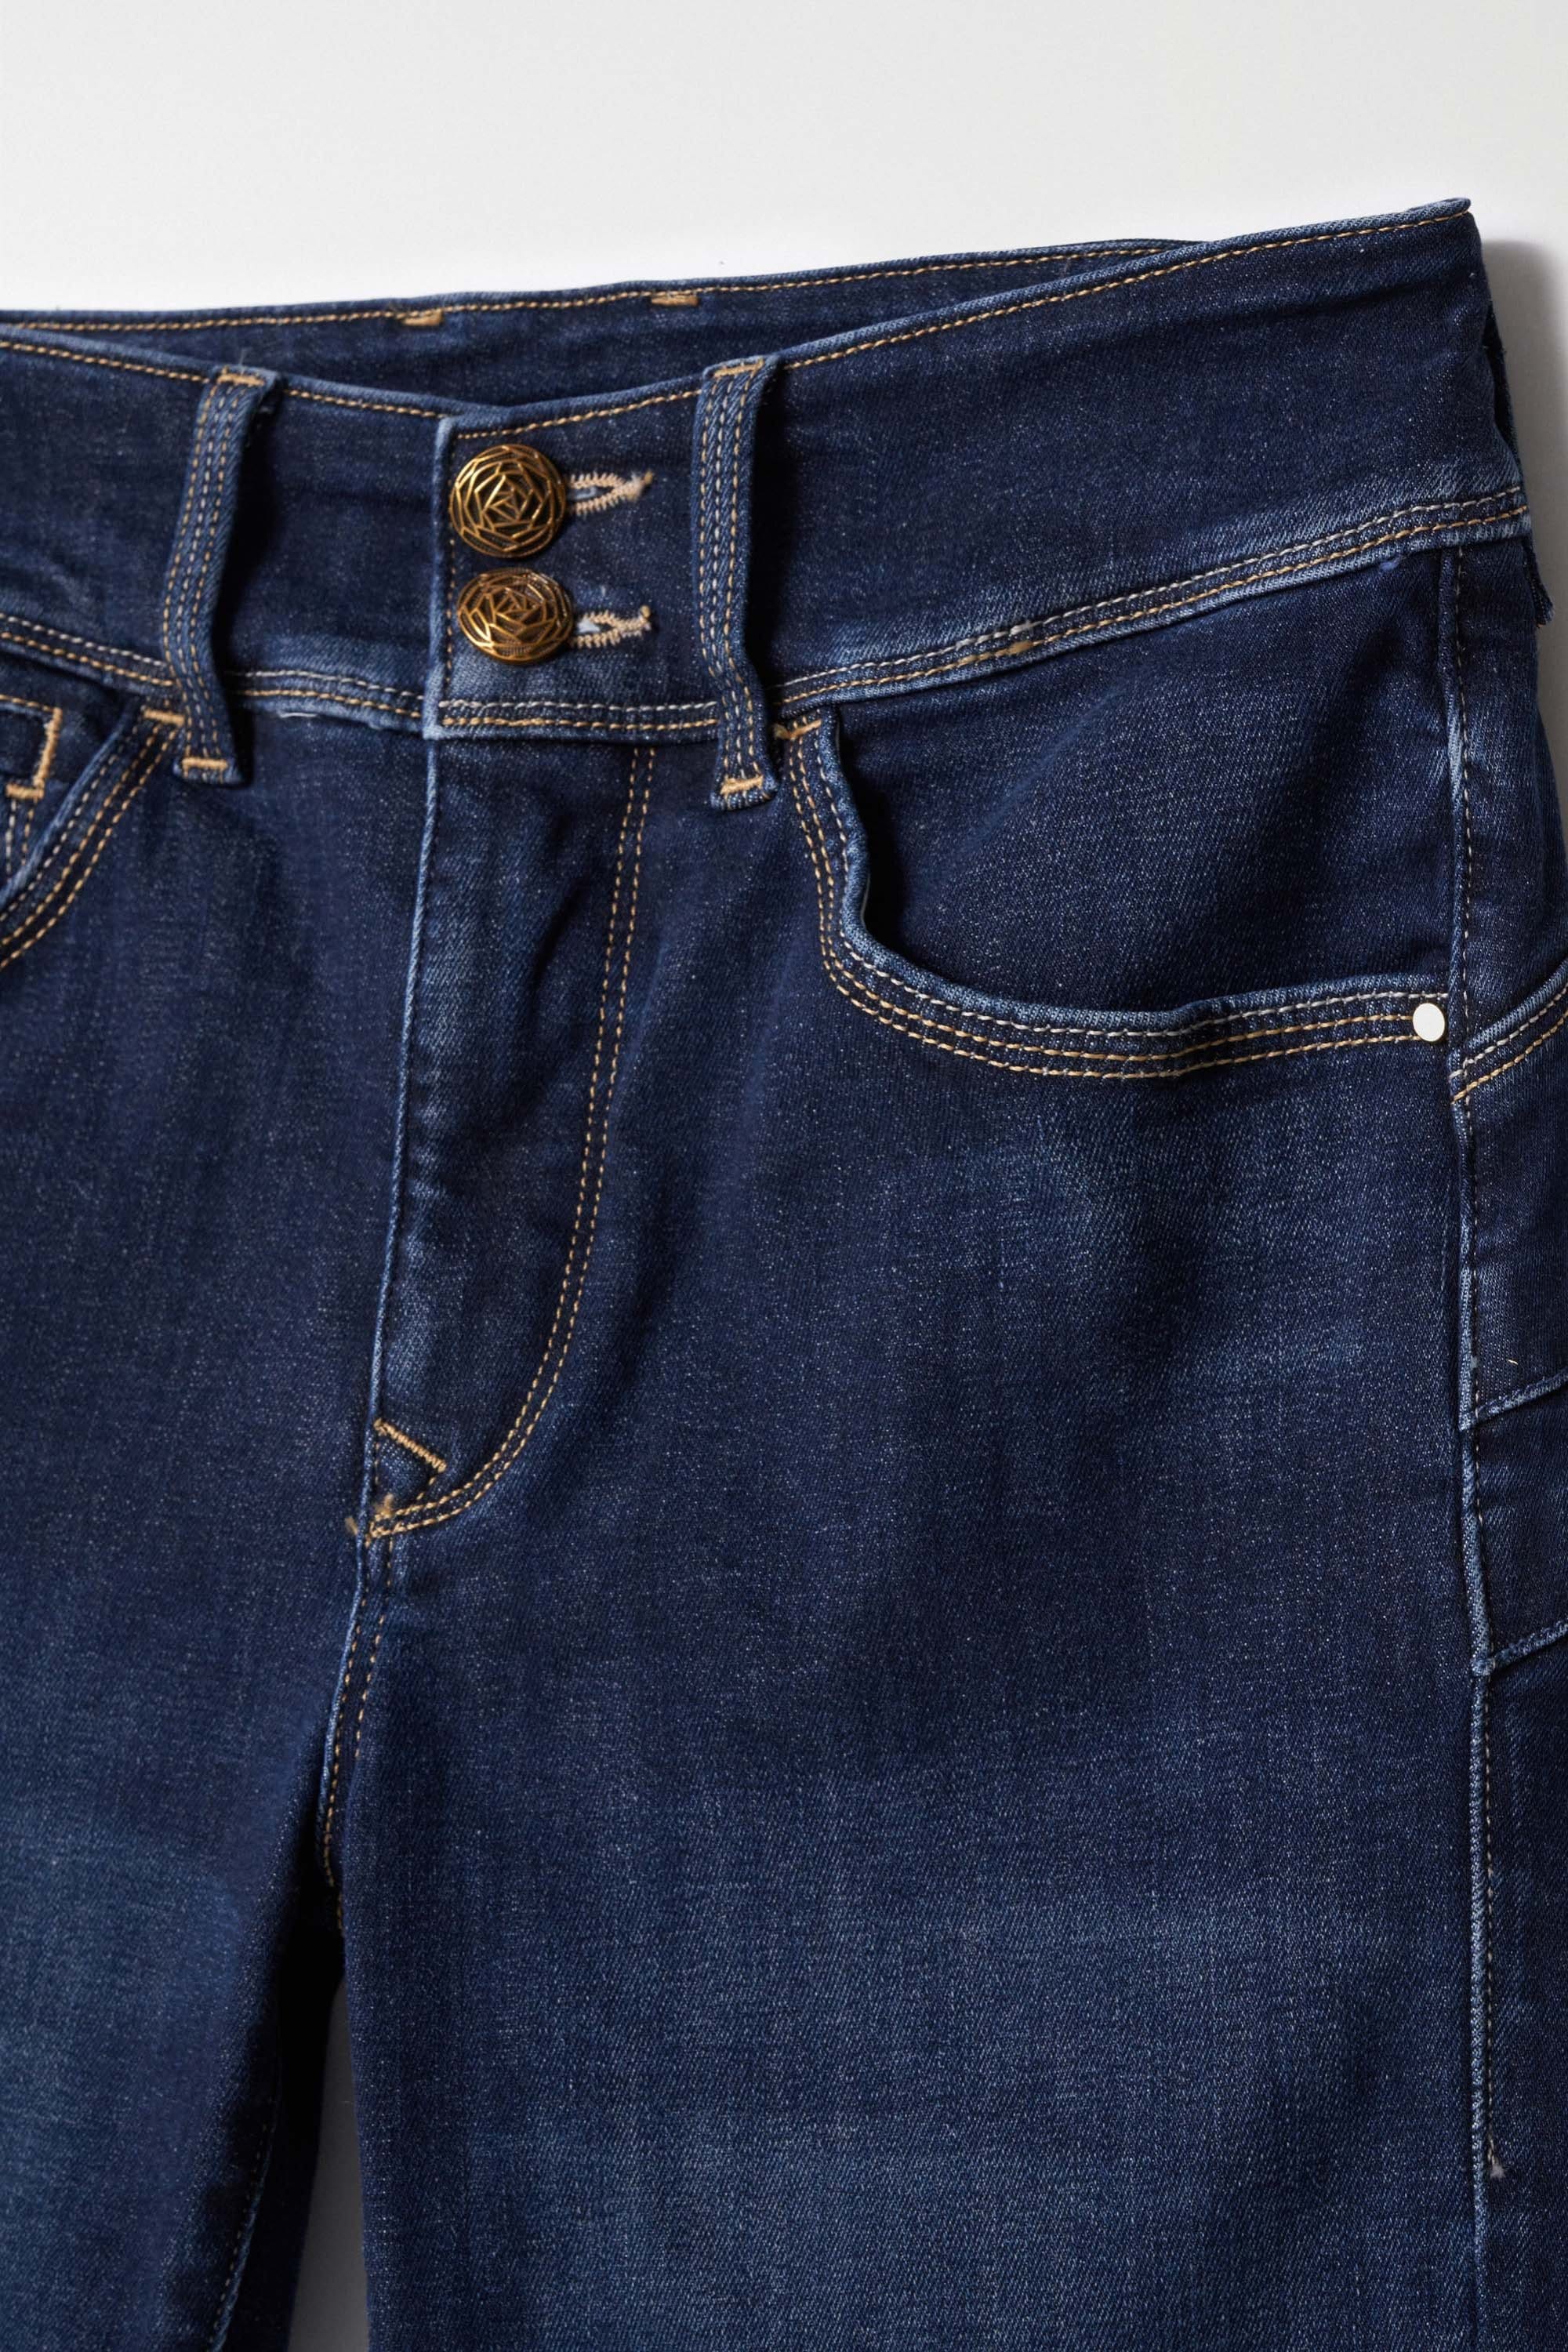 Secret Dark Wash With Detail in Medium Wash Jeans Salsa Jeans   